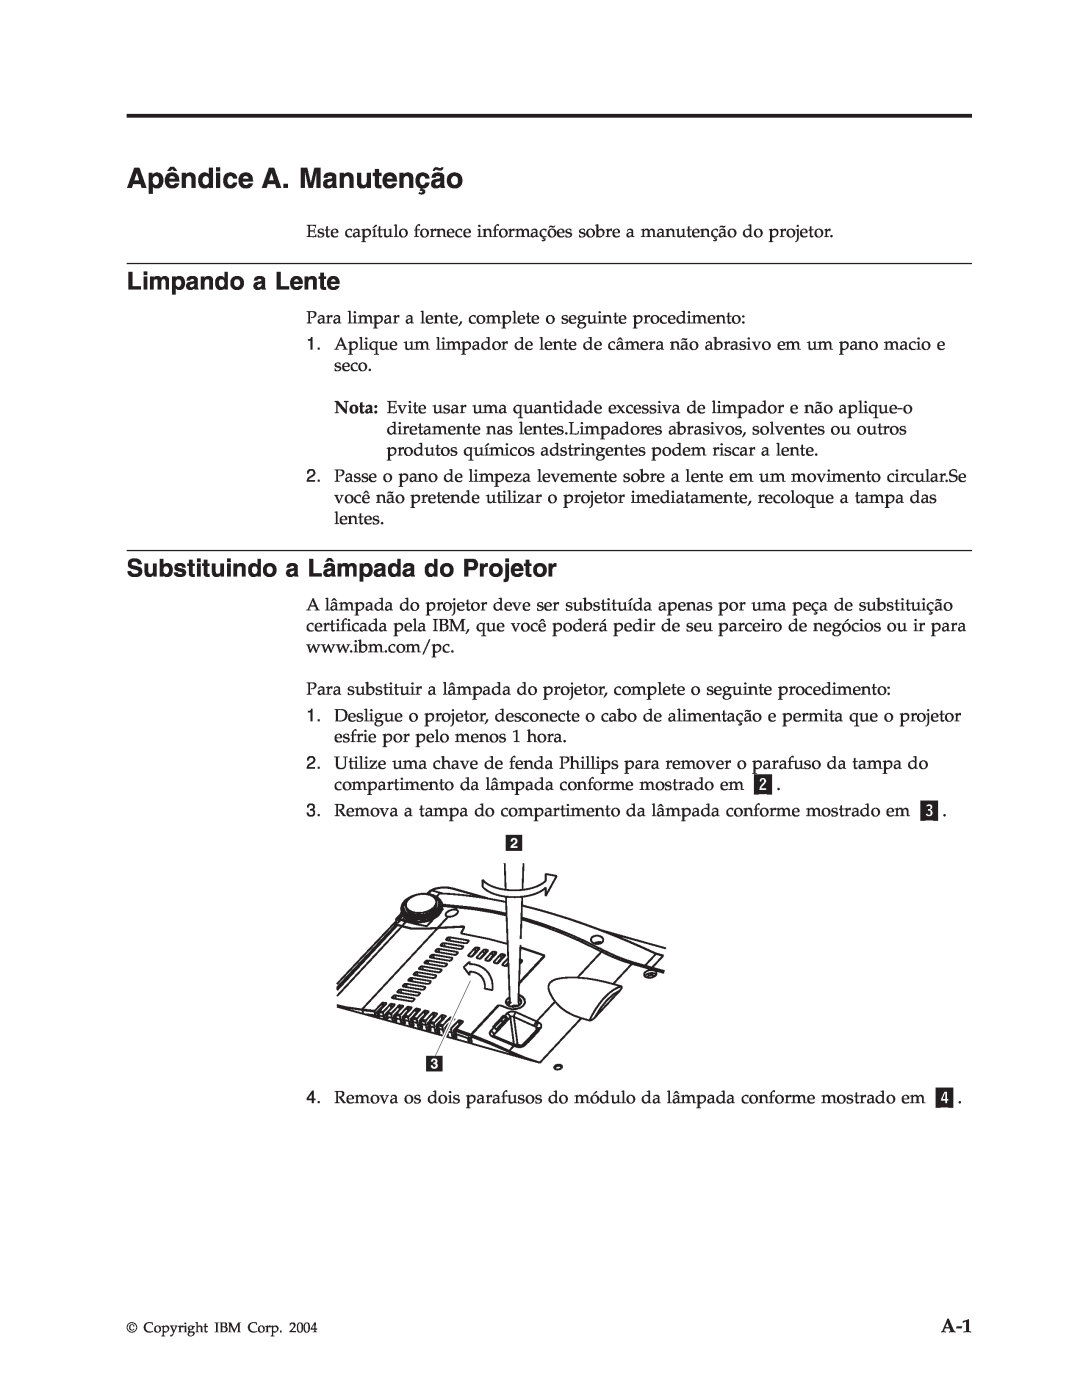 IBM M400 manual Apêndice A. Manutenção, Limpando a Lente, Substituindo a Lâmpada do Projetor 